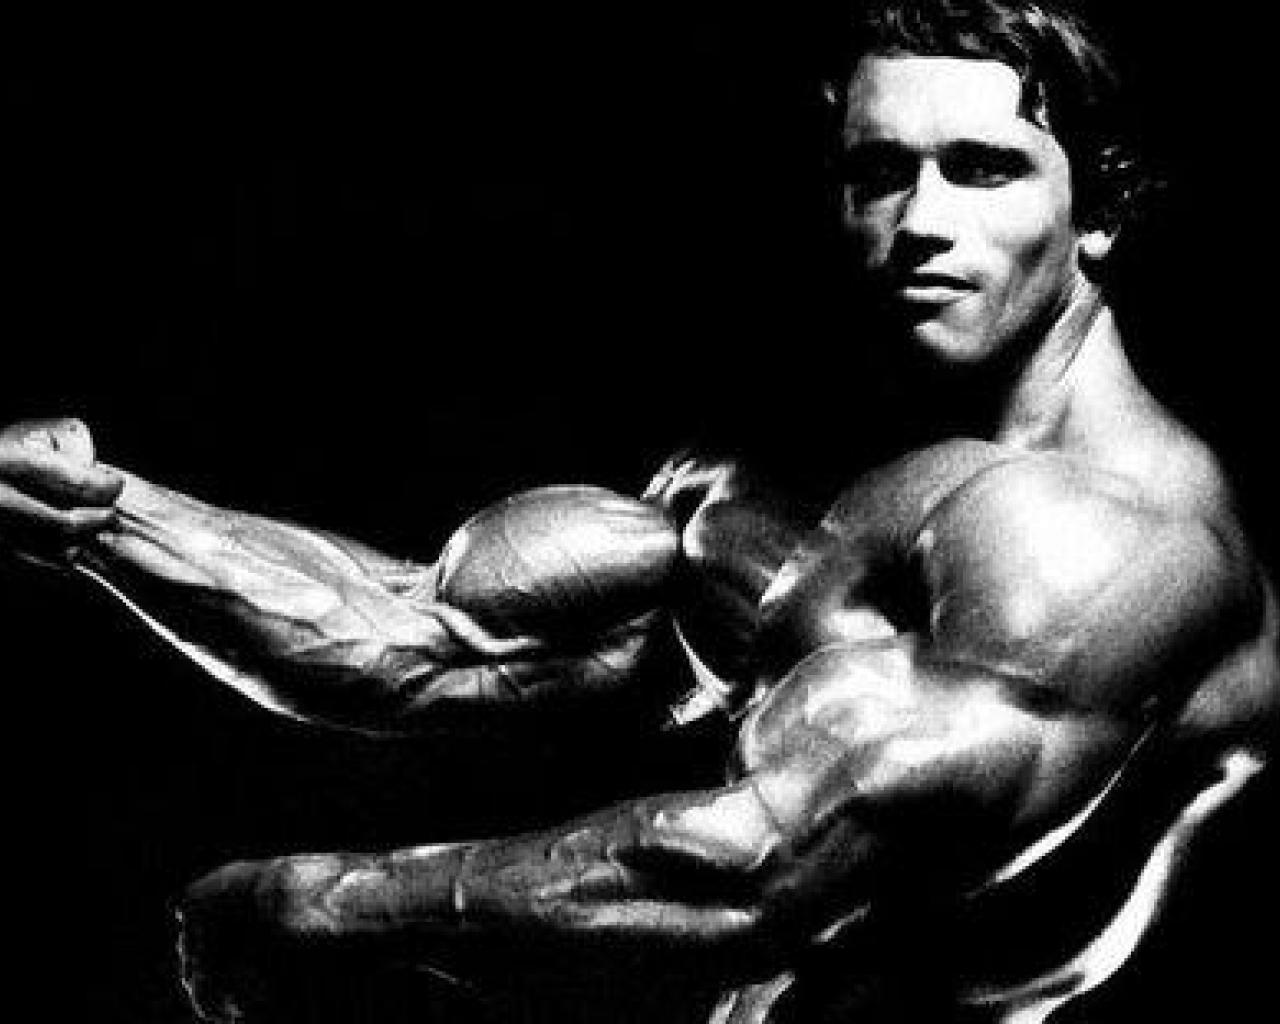 Arnold Schwarzenegger Bodybuilder